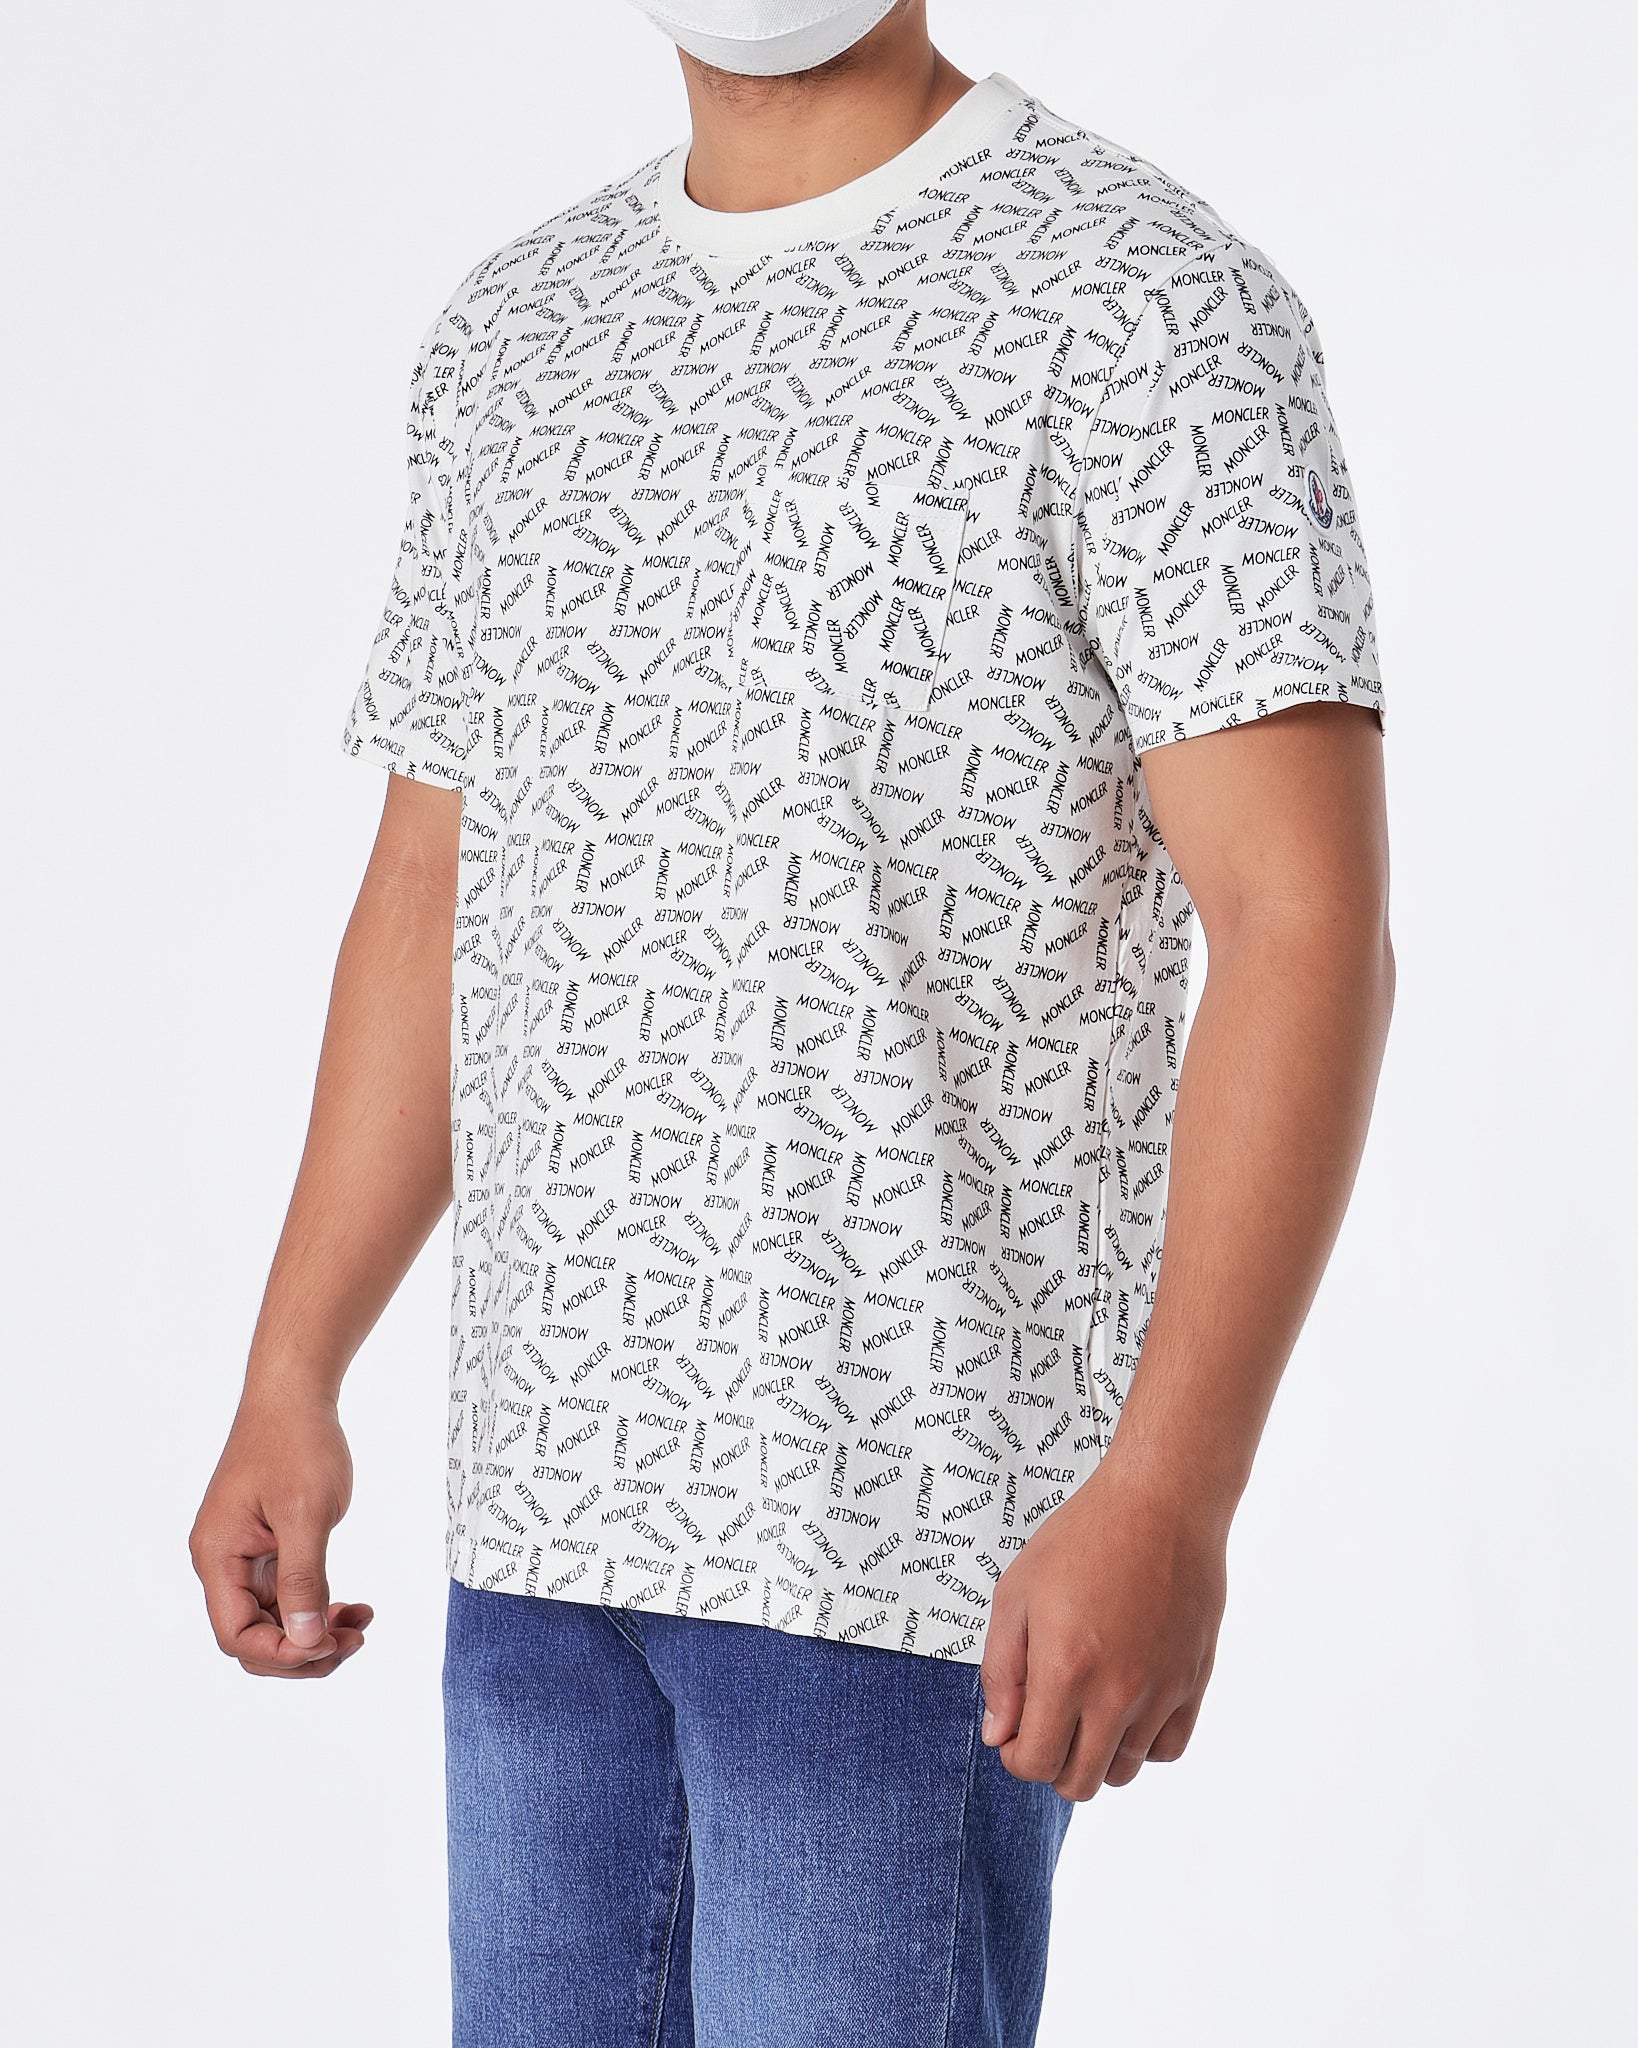 MON Logo Over Printed Men White  T-Shirt 21.90